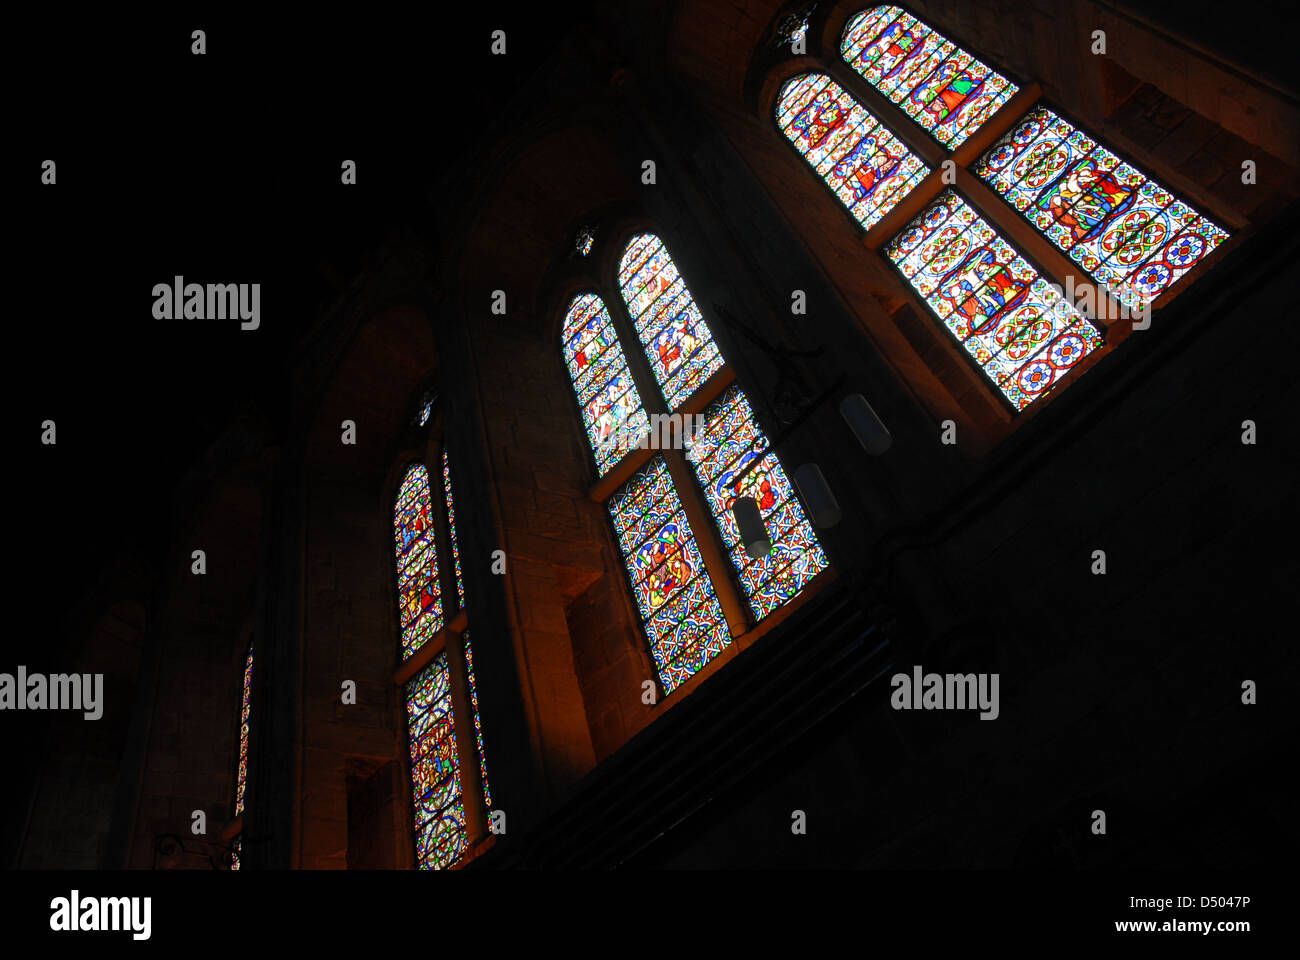 Les six fenêtres du Sud, église du prieuré, Bolton Abbey, Yorkshire, Angleterre, Royaume-Uni Banque D'Images